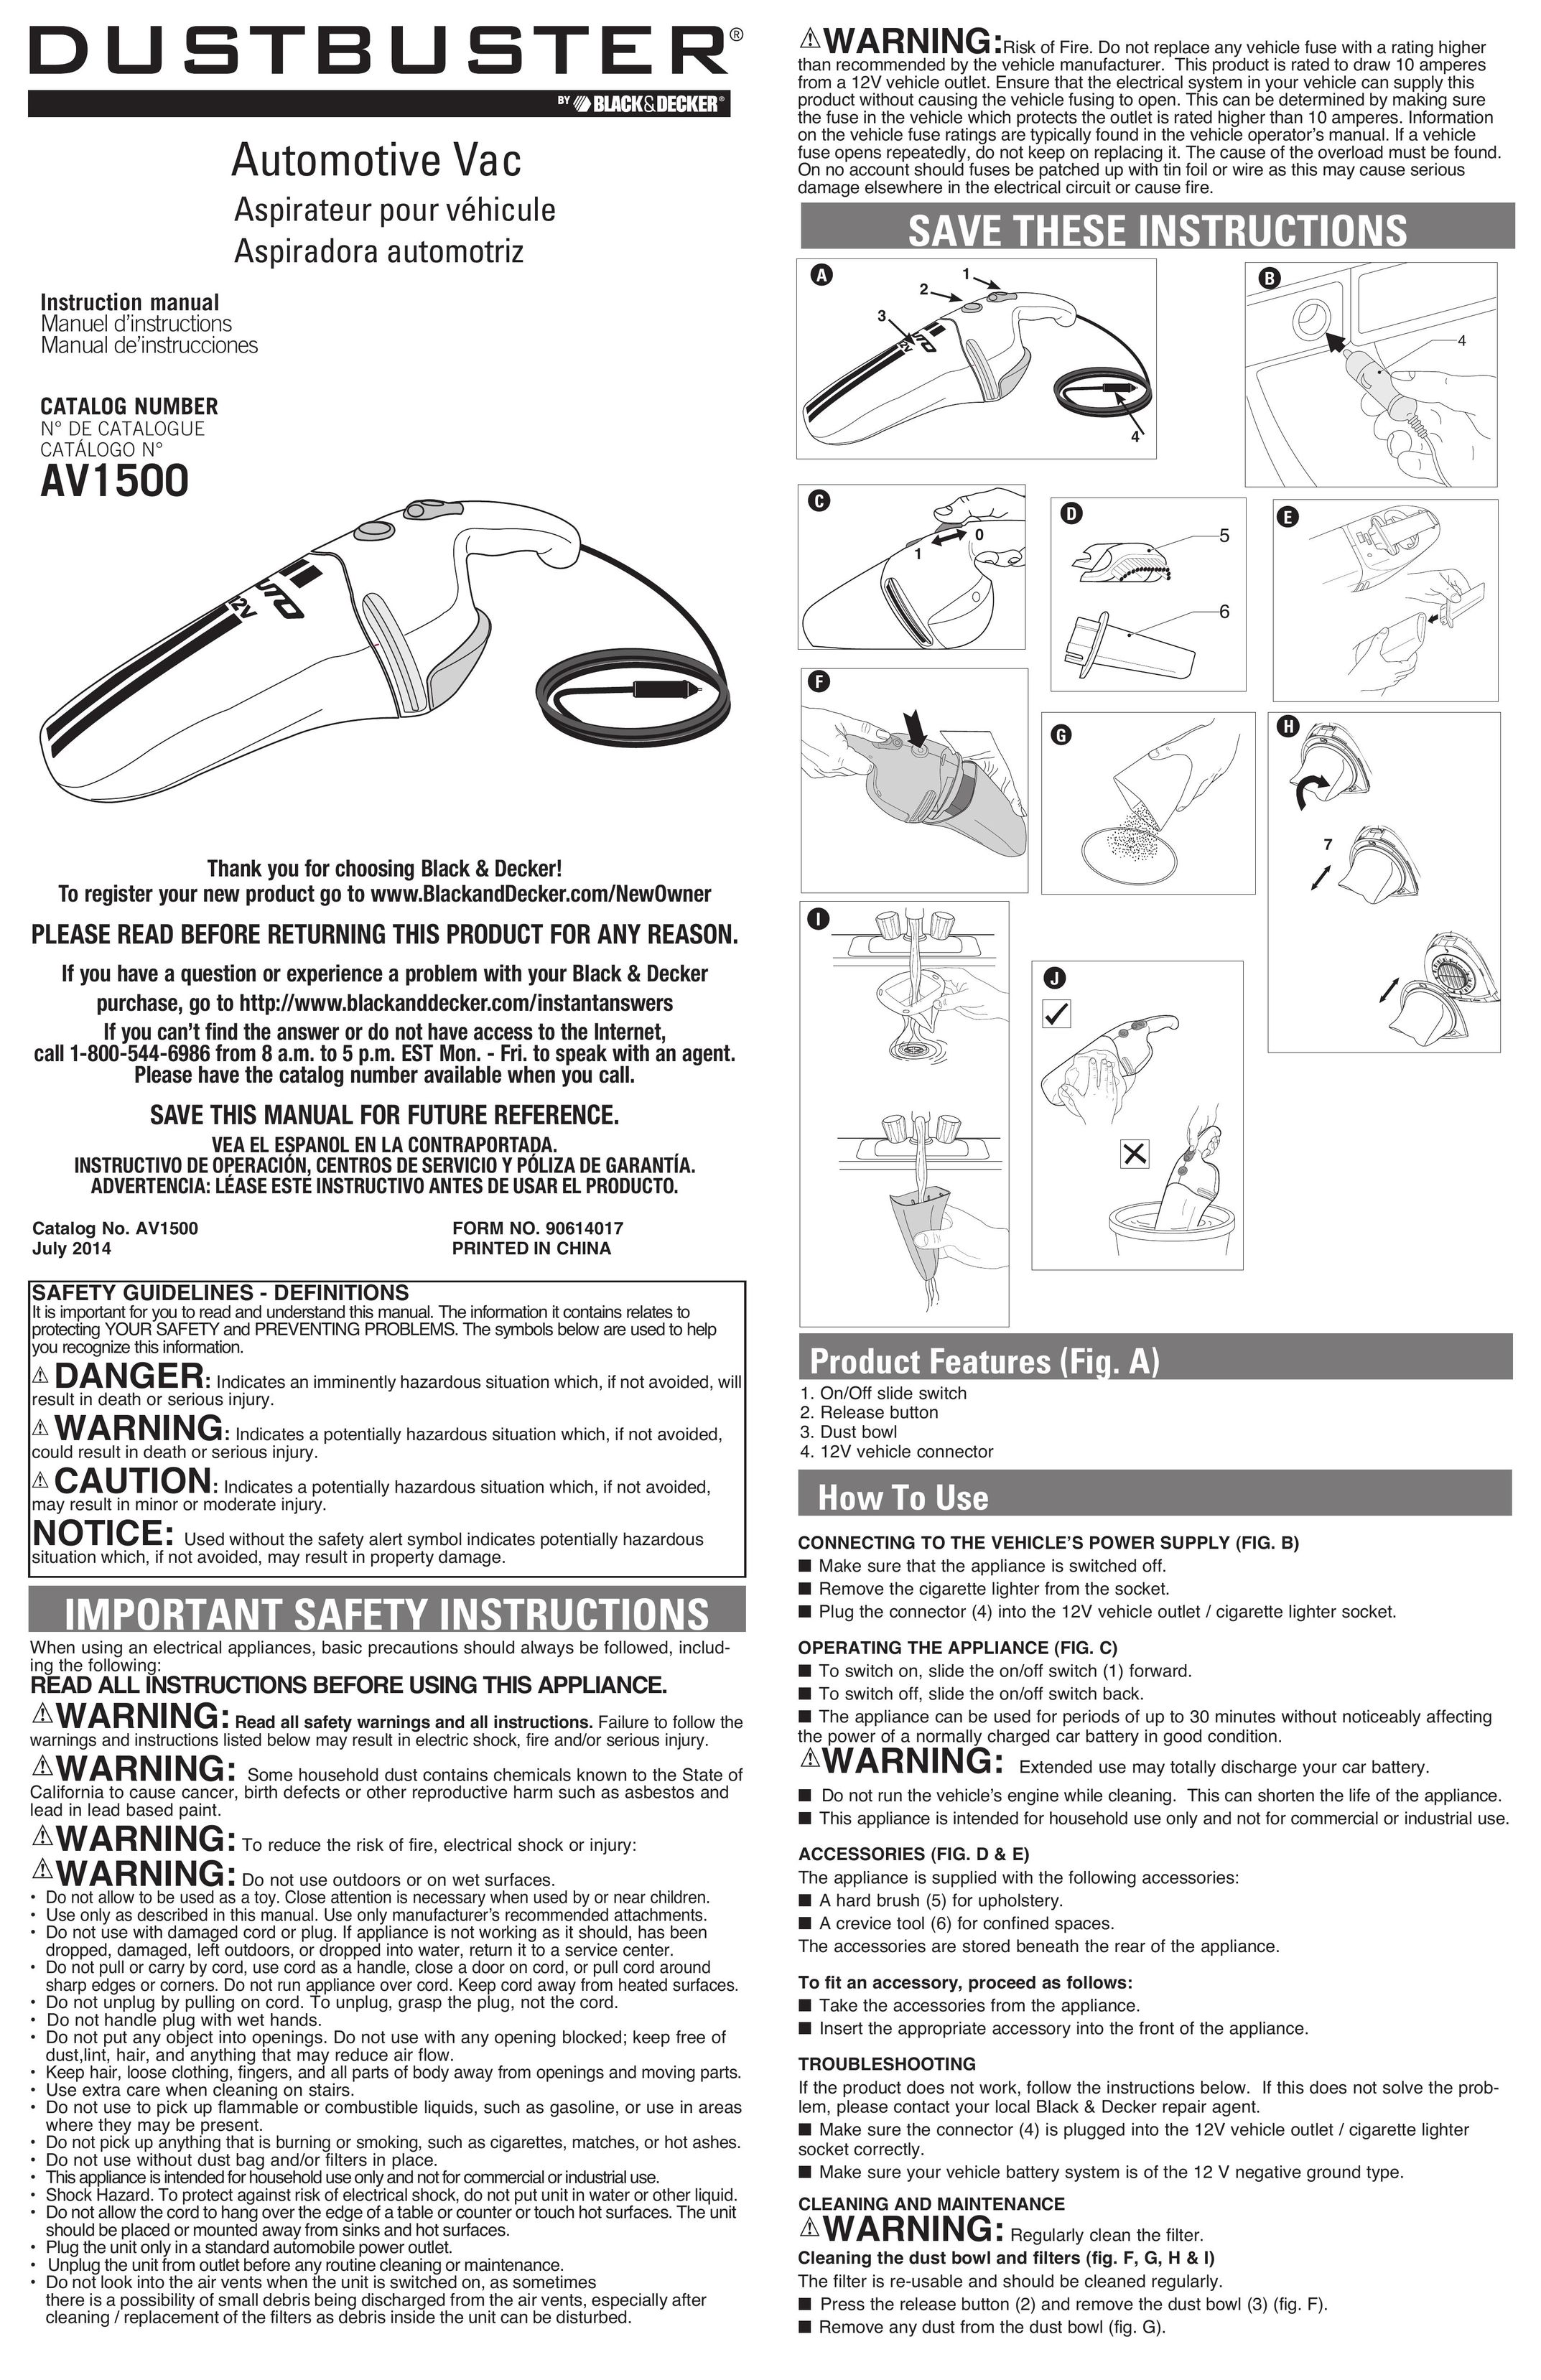 Black & Decker AV1500 Vacuum Cleaner User Manual